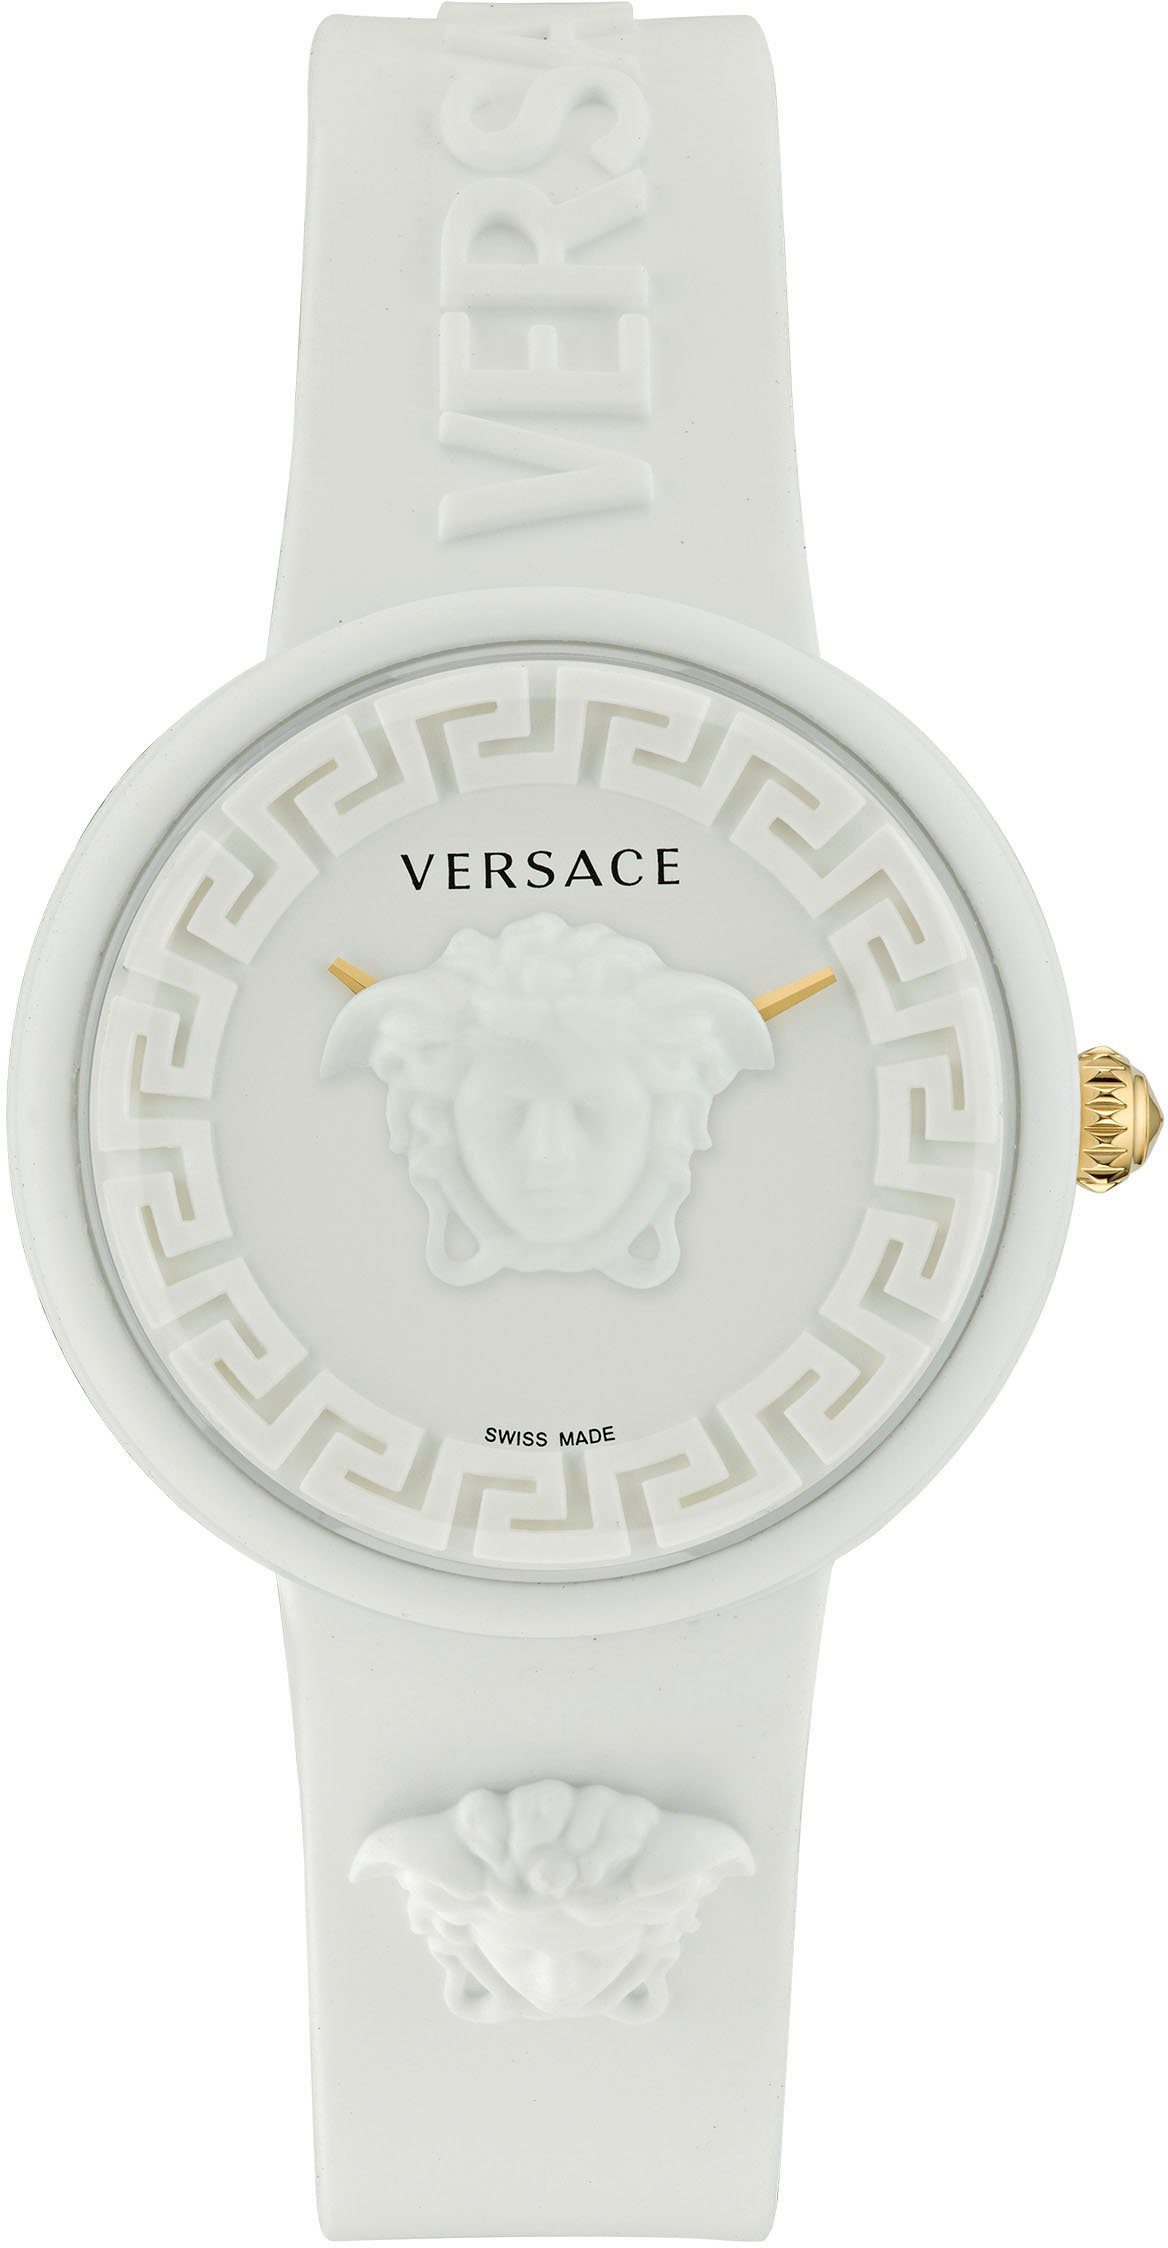 Versace Quarzuhr MEDUSA POP, VE6G00123 weiß